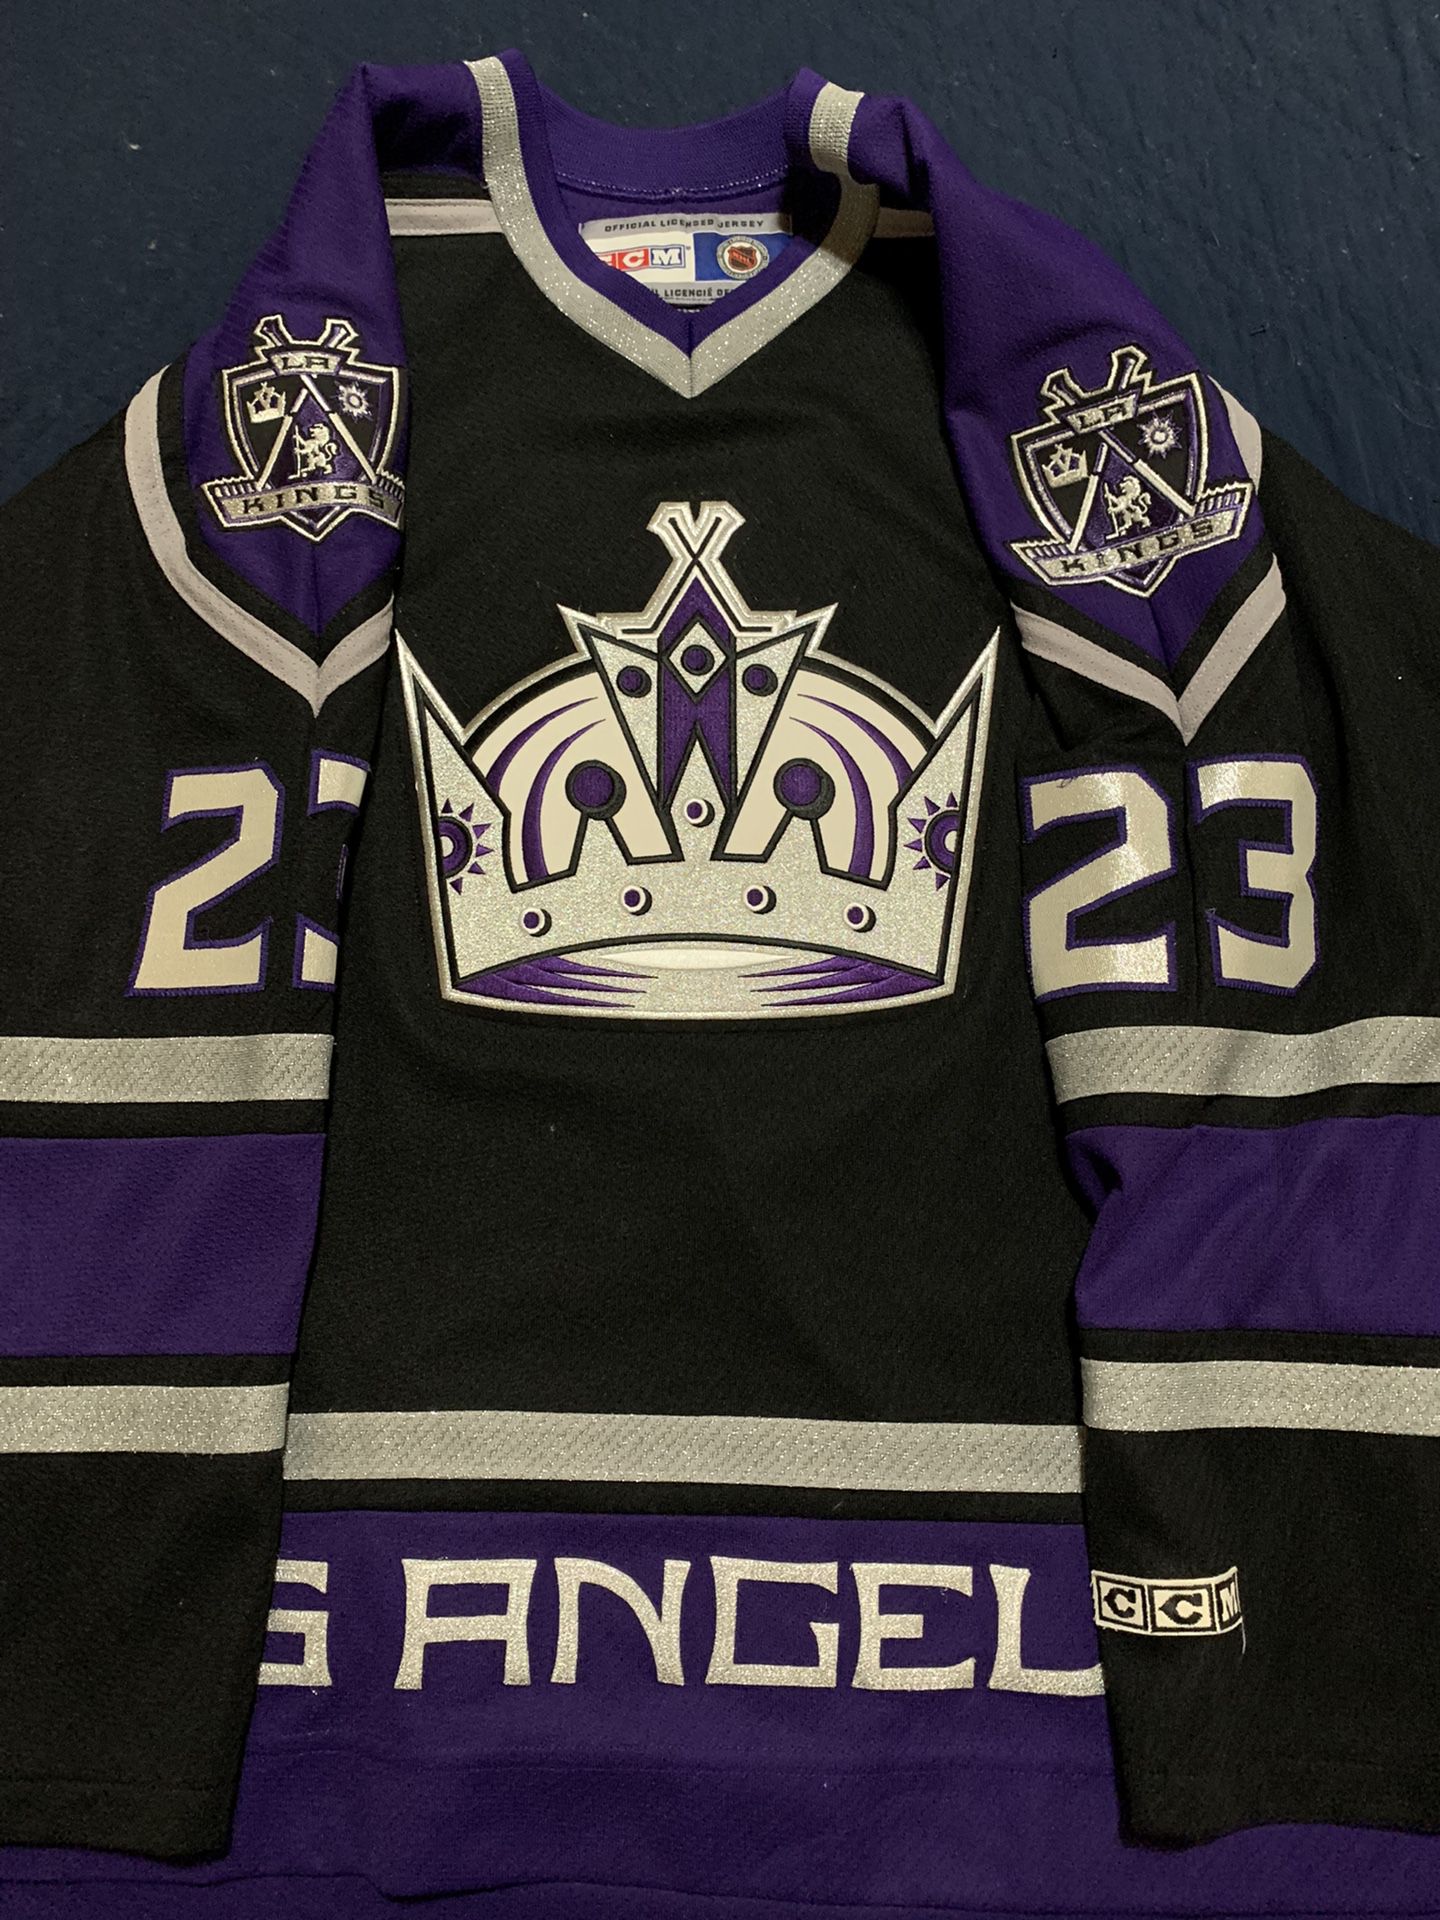 la kings purple and black jersey